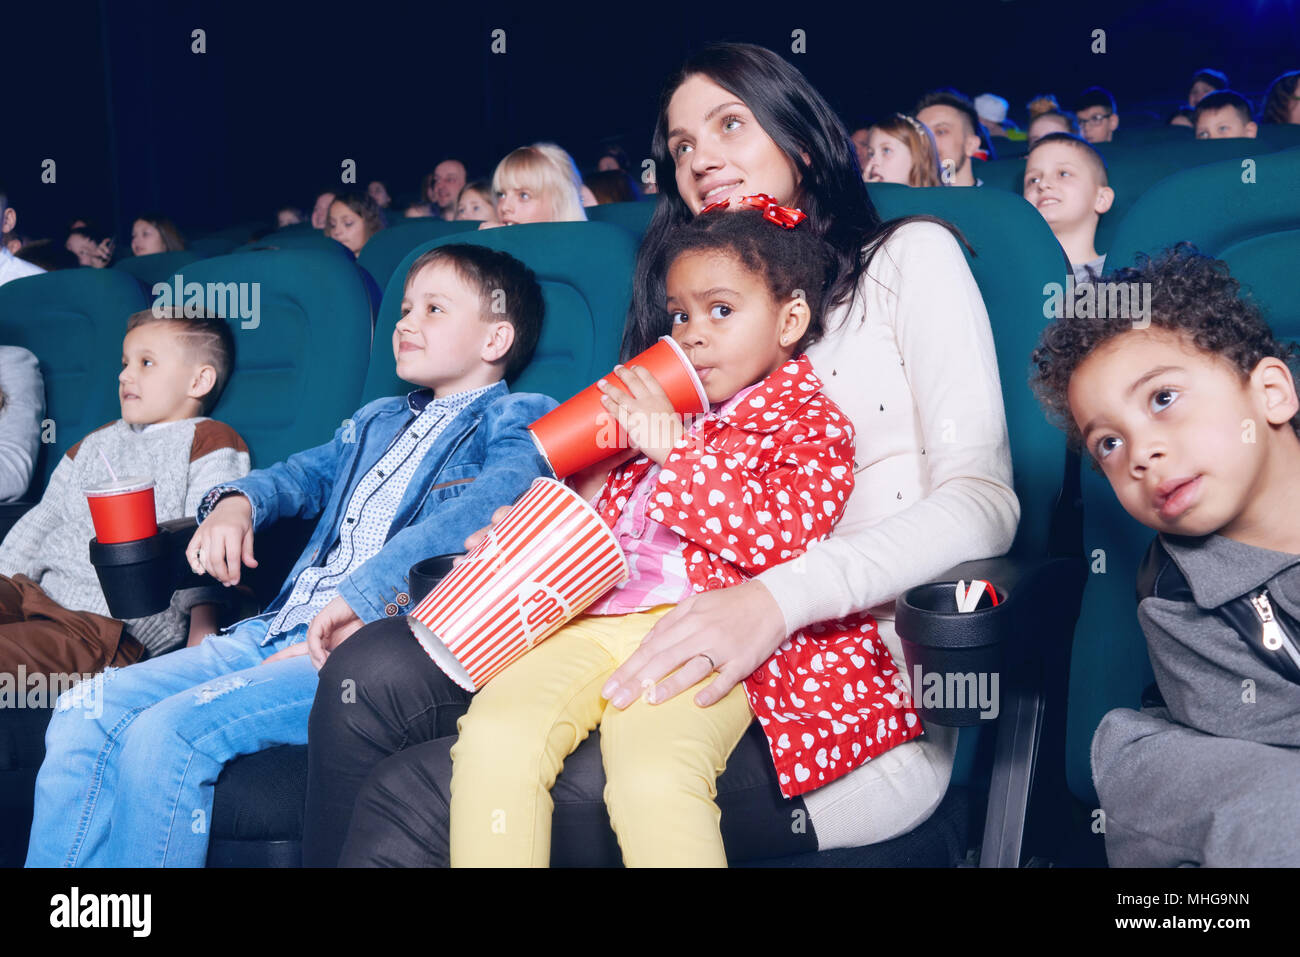 Schöne Frau und hübschen kleinen Mädchen im Kino posieren. Mädchen trinken fizzy Getränke und Popcorn Papiertüte. Kleine Zuschauer sitzen in bequemen Stühlen, gerade am Bildschirm und lächelnd. Stockfoto